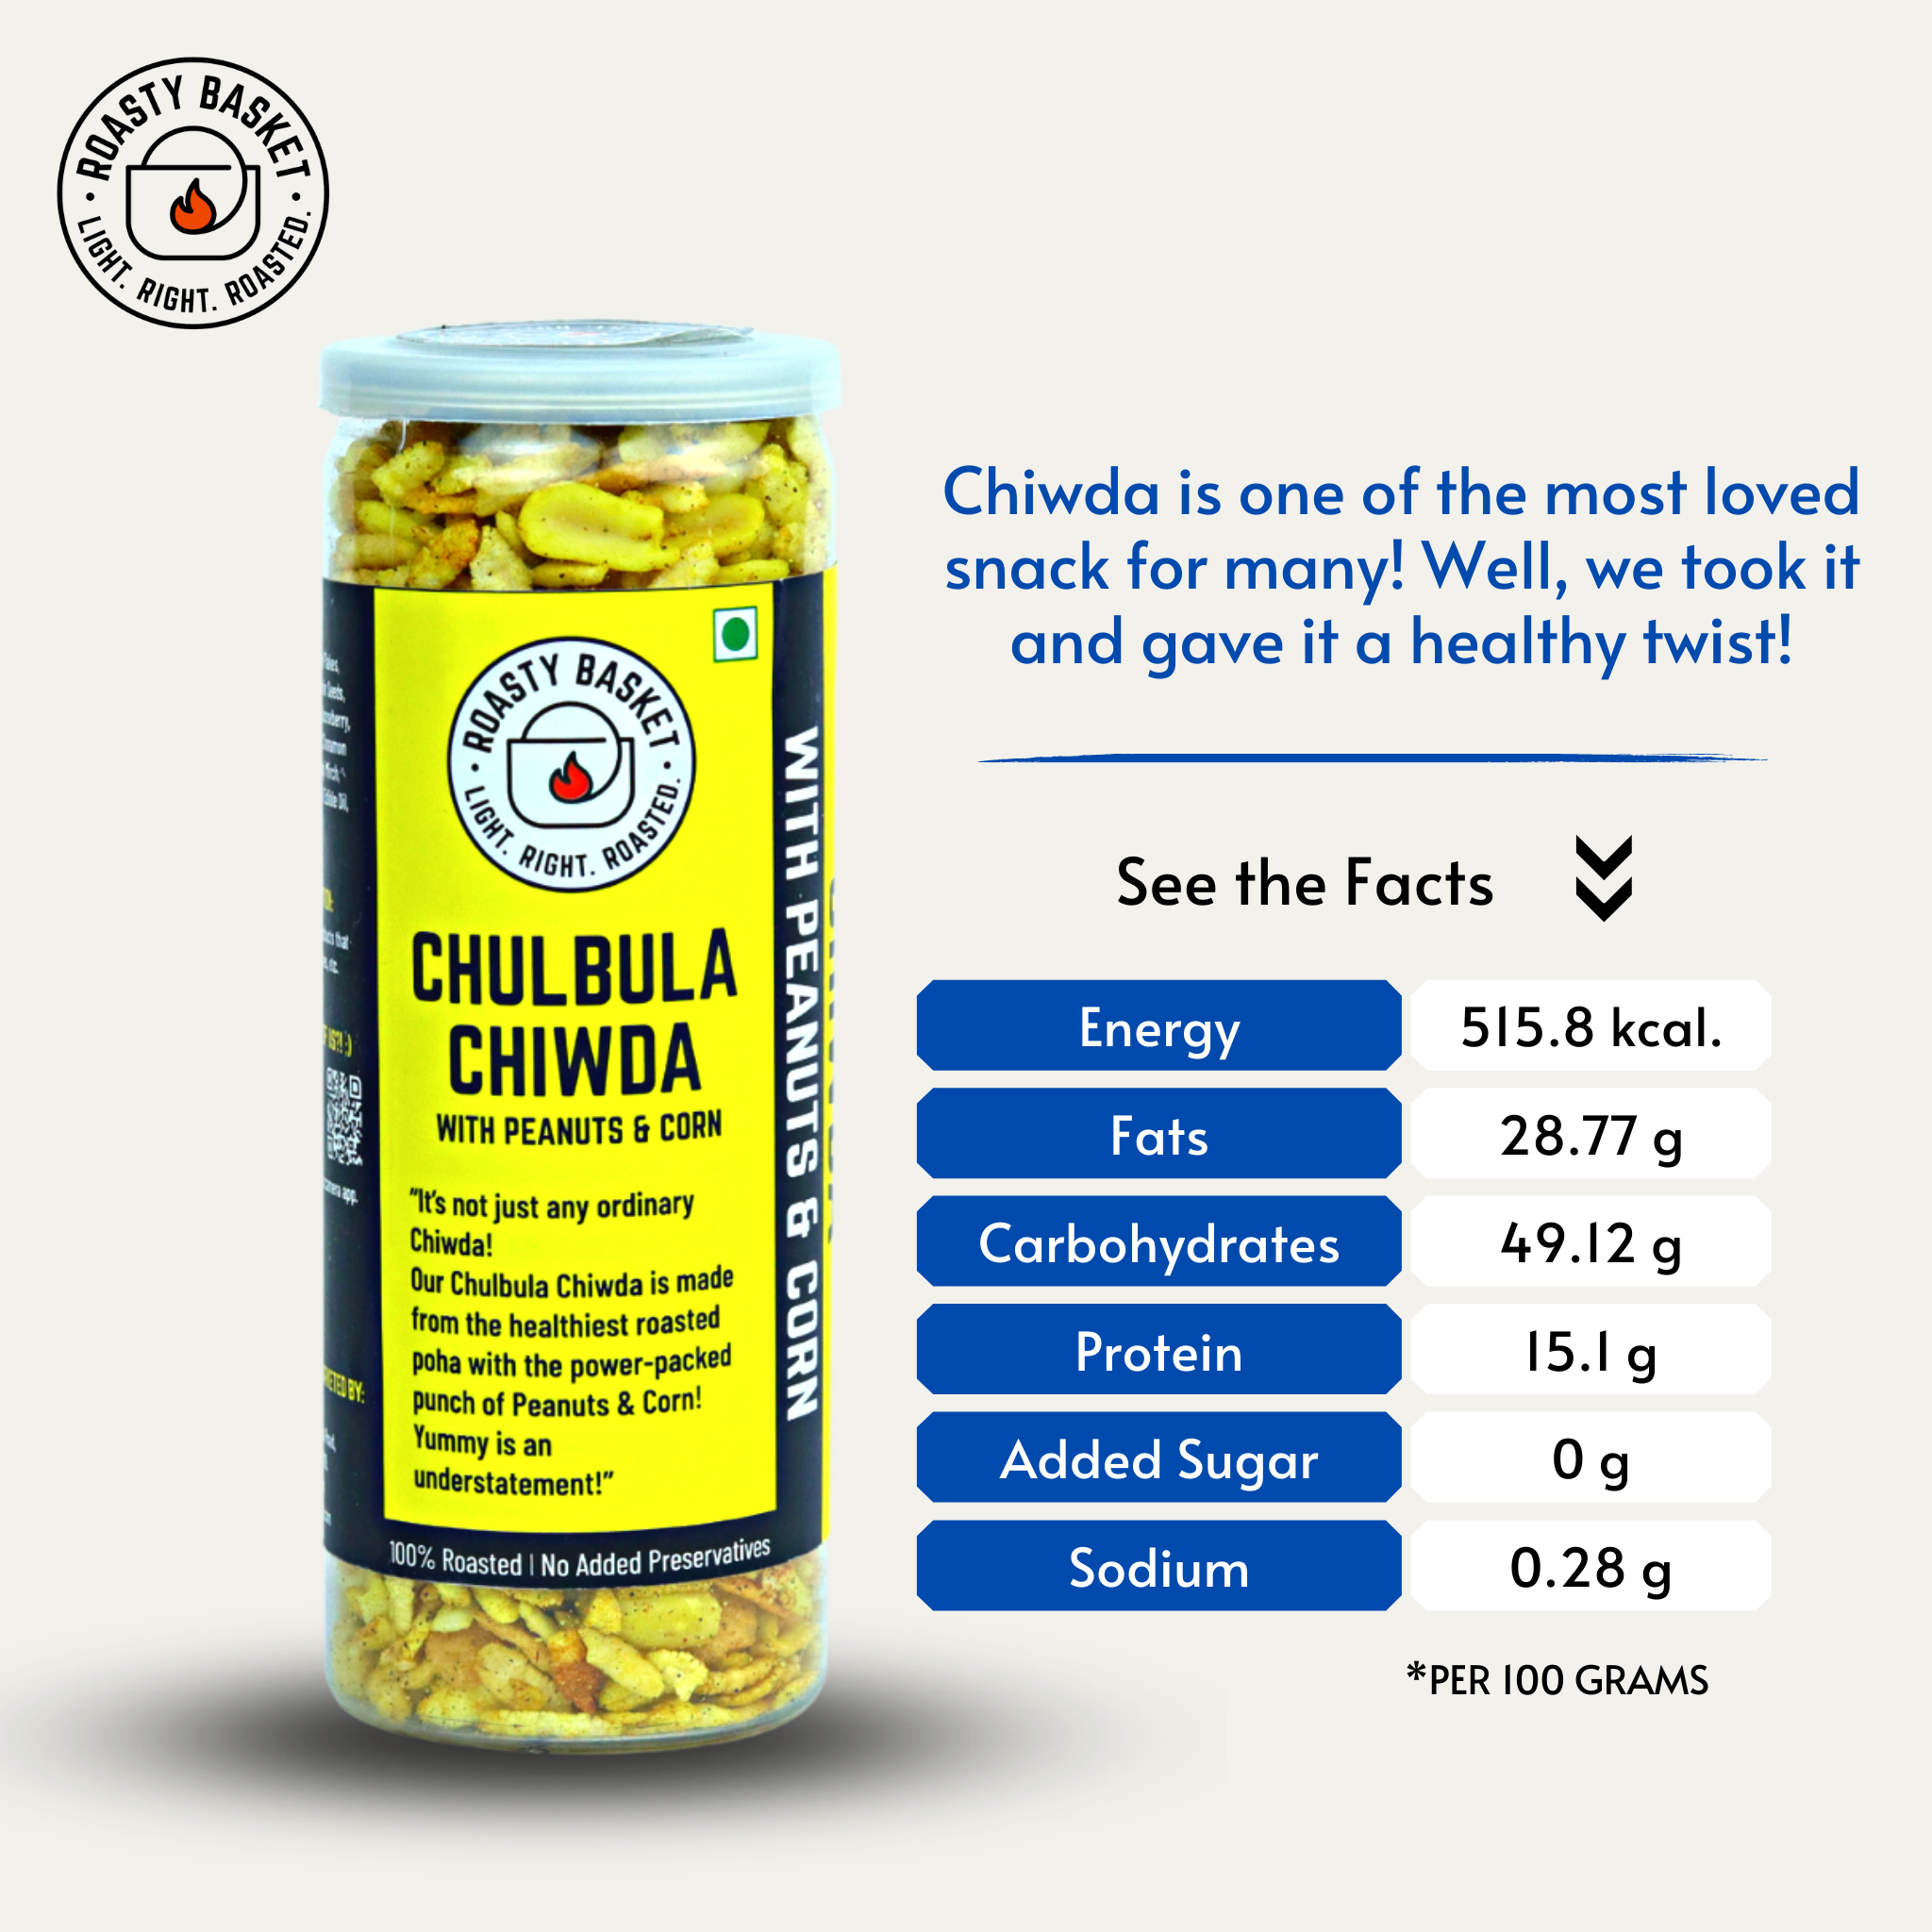 Chulbula chidwa organic snacks nutritional facts